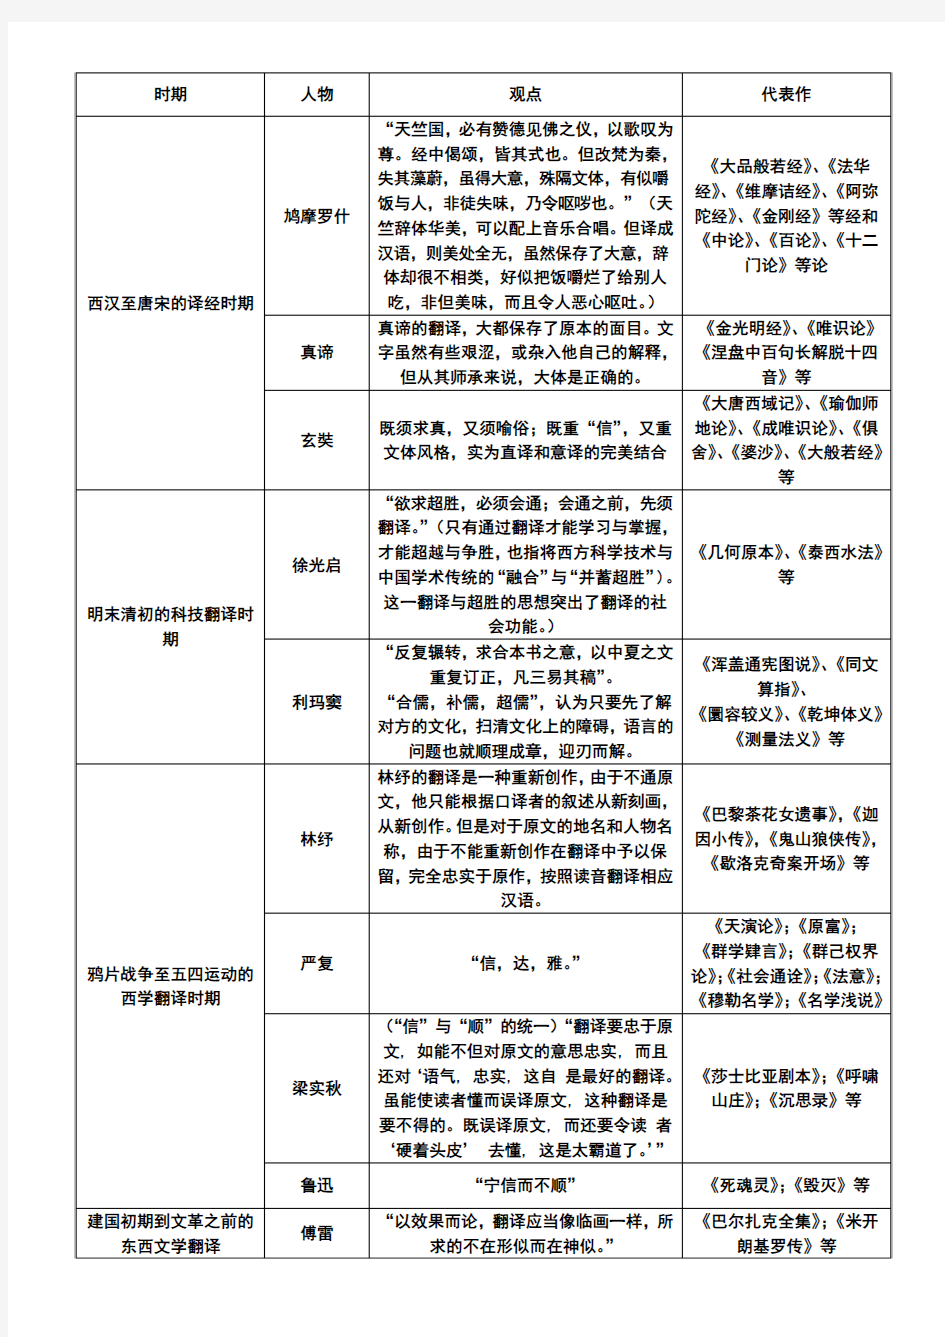 中国翻译史(各时期代表人物及其代表作与翻译观点)